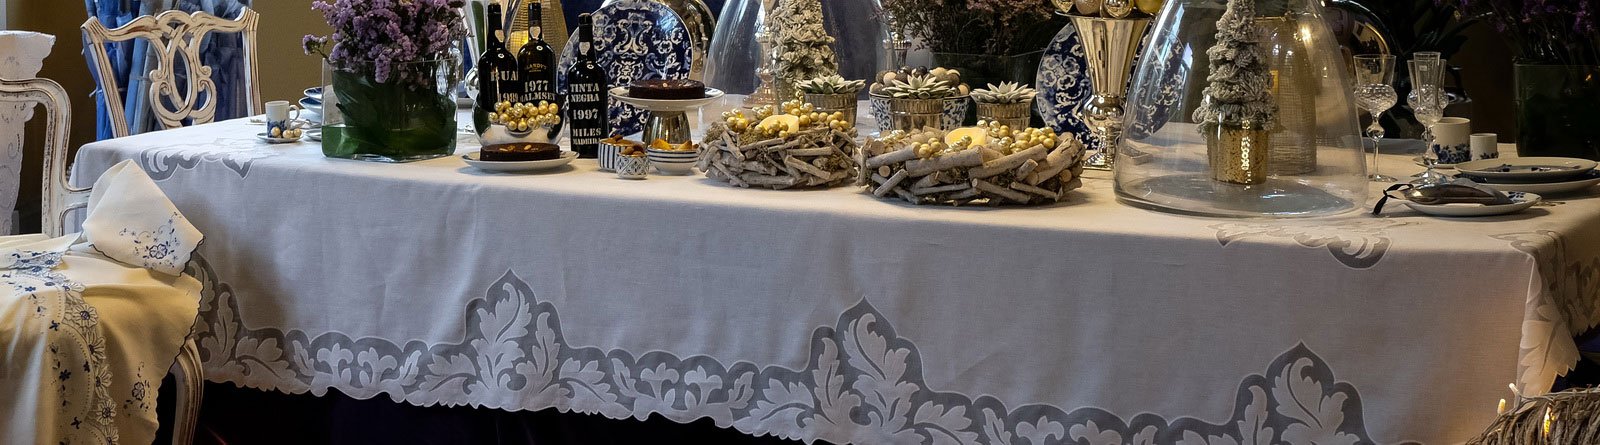 Toalhas de mesa e chá, acessórios de mesa, individuais, guardanapos e centros de mesa bordados em Bordado Madeira.